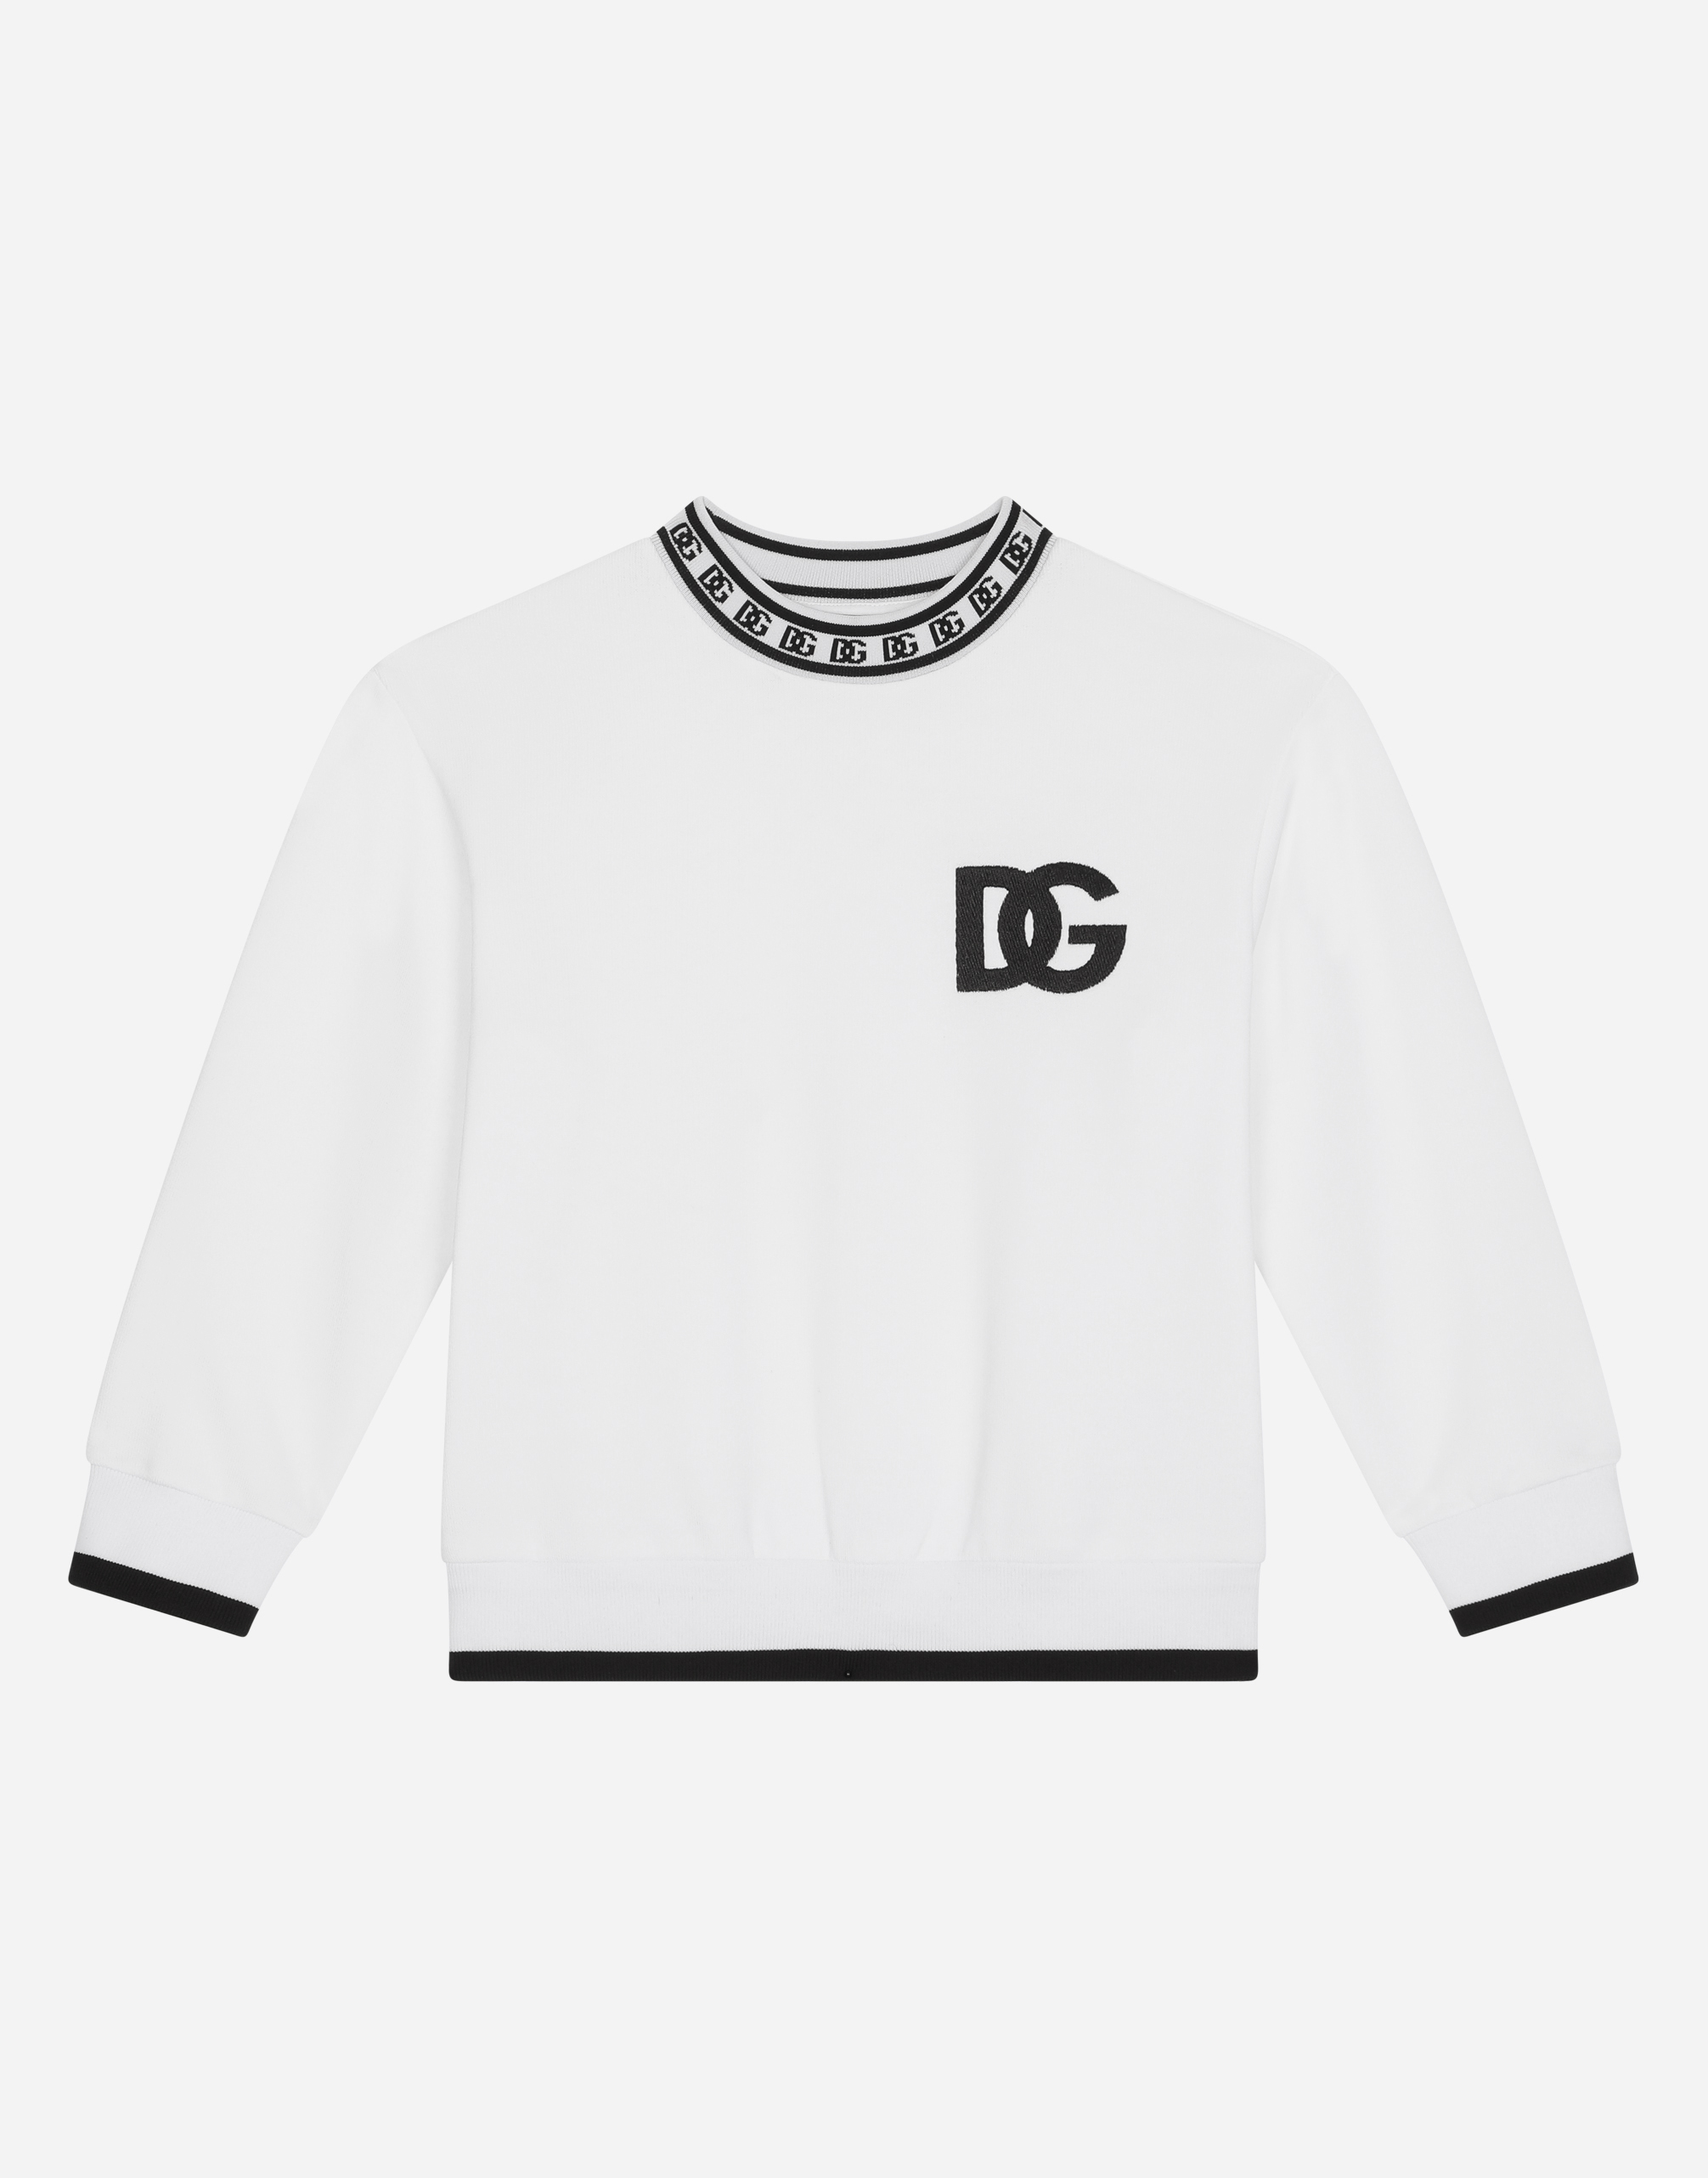 Dolce & Gabbana Kids' Jersey Round-neck Sweatshirt With Dg Logo Print In White